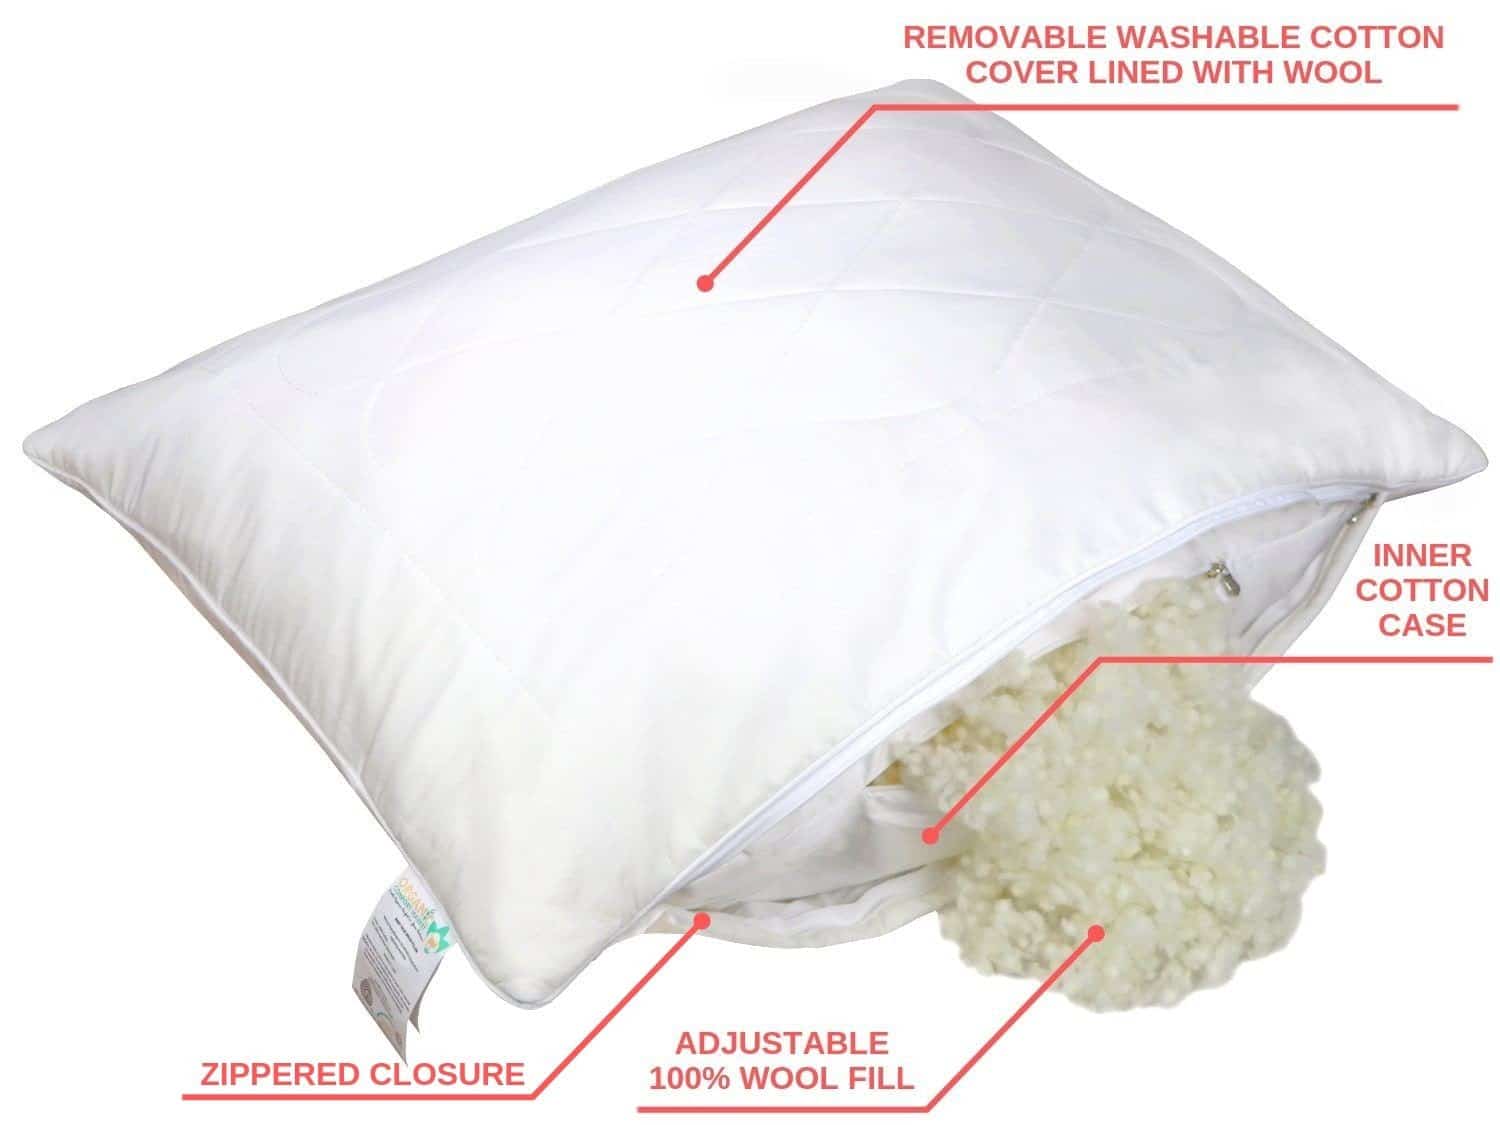 woolmark wool pillow